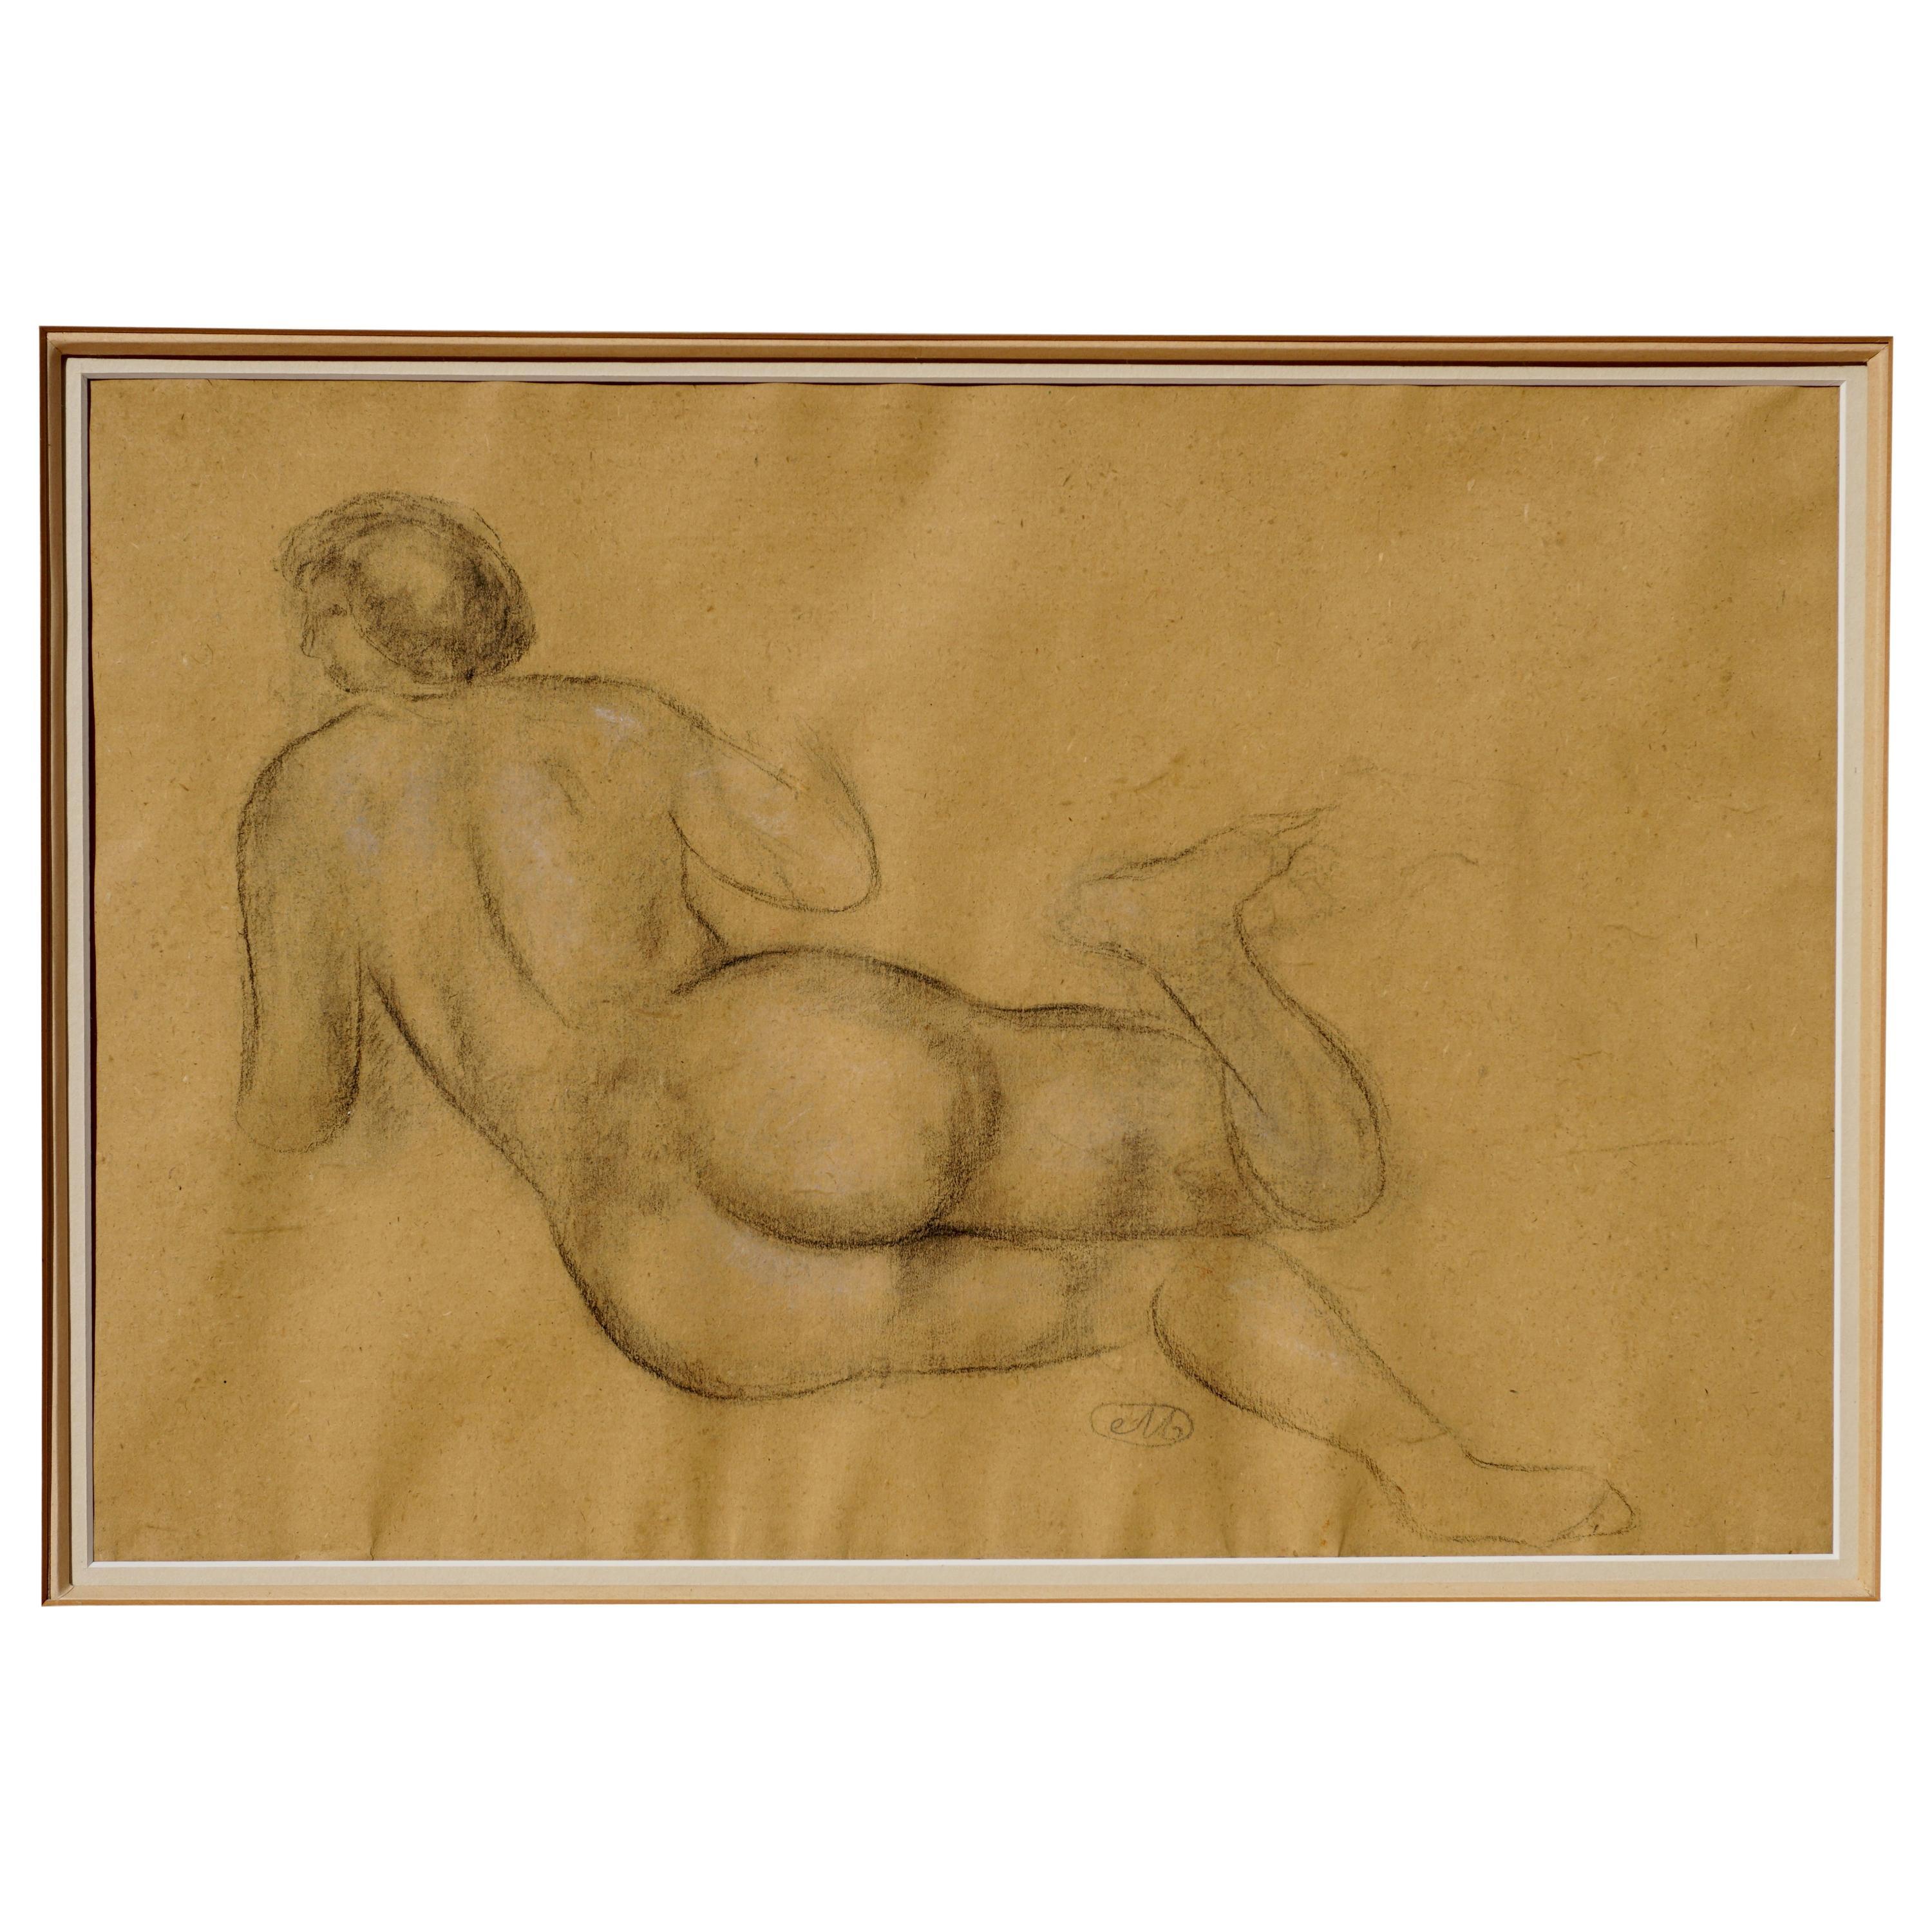 Aristide Maillol (Fr, 1861-1944) 

Eine sehr große Original-Kohlezeichnung von Aristide Maillol, beglaubigt von Olivier Lorquin, Direktor der Galerie Dina Vierny im Musee Maillol in Paris. Ein COA wird von Mr. Lorquin zur Verfügung gestellt